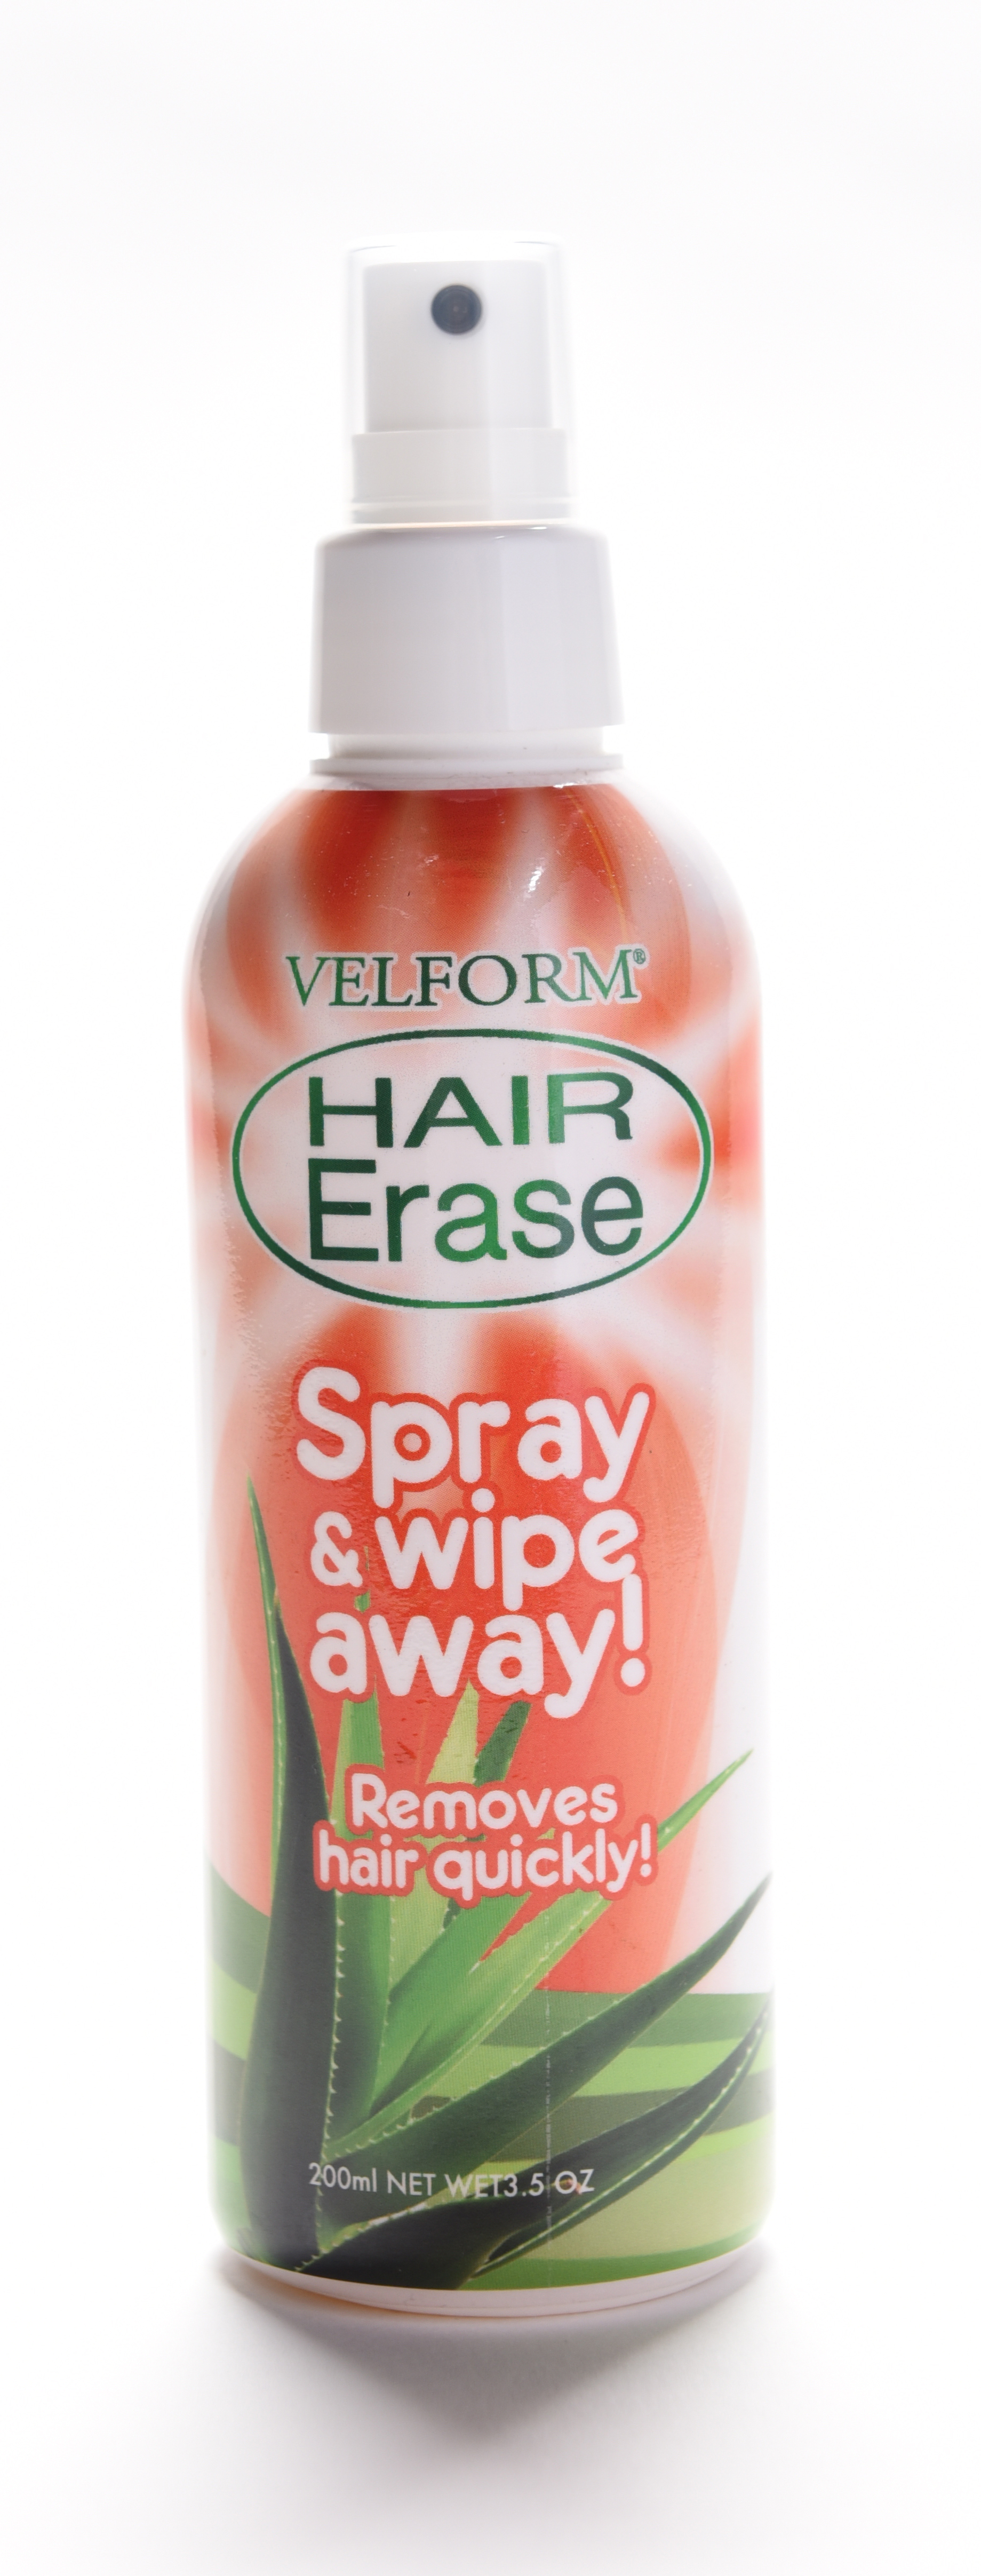 Afbeelding van Velform Hair Erase